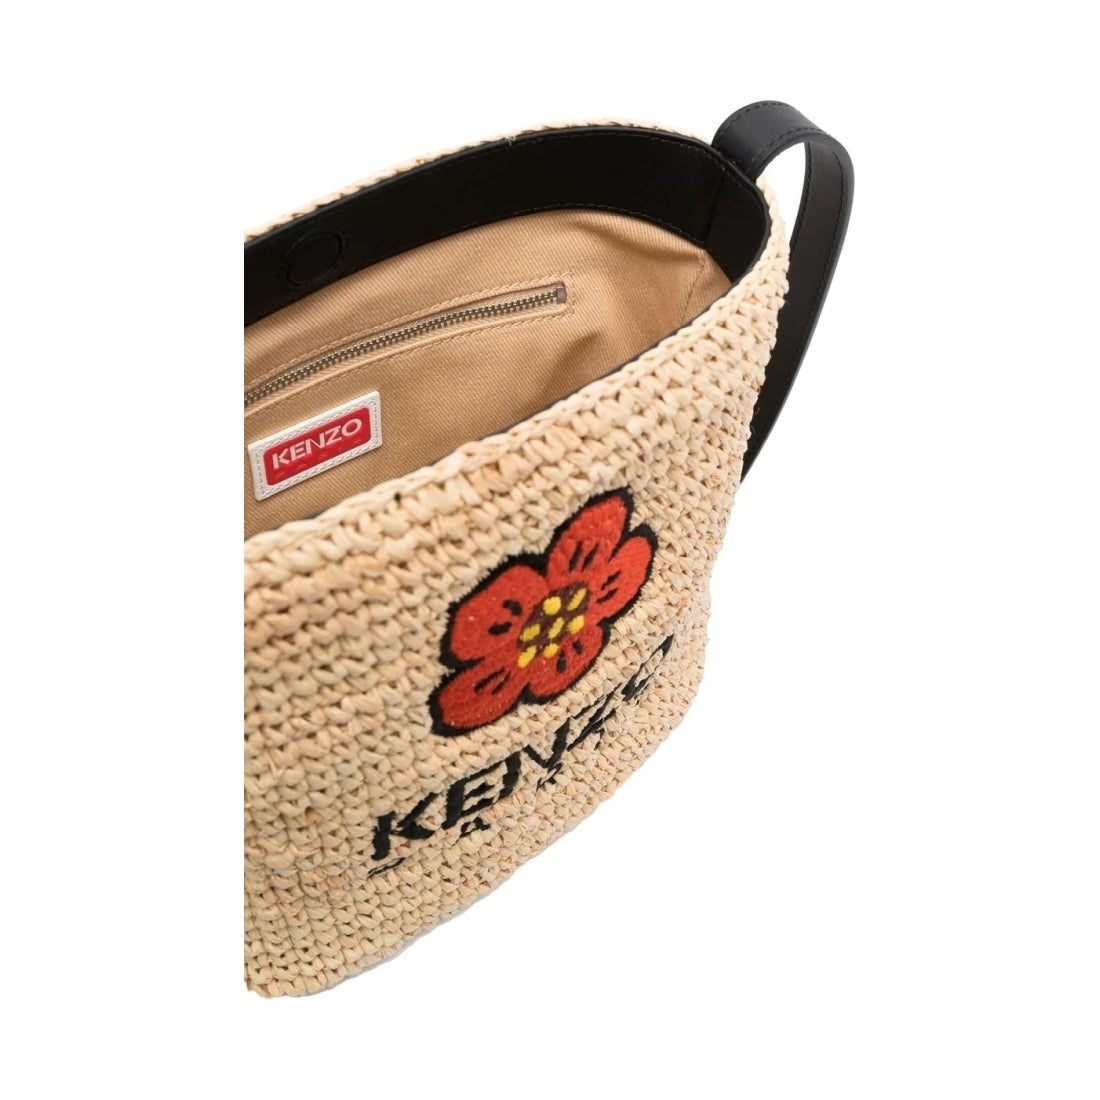 KENZO womens black mini bucket bag | Vilbury London